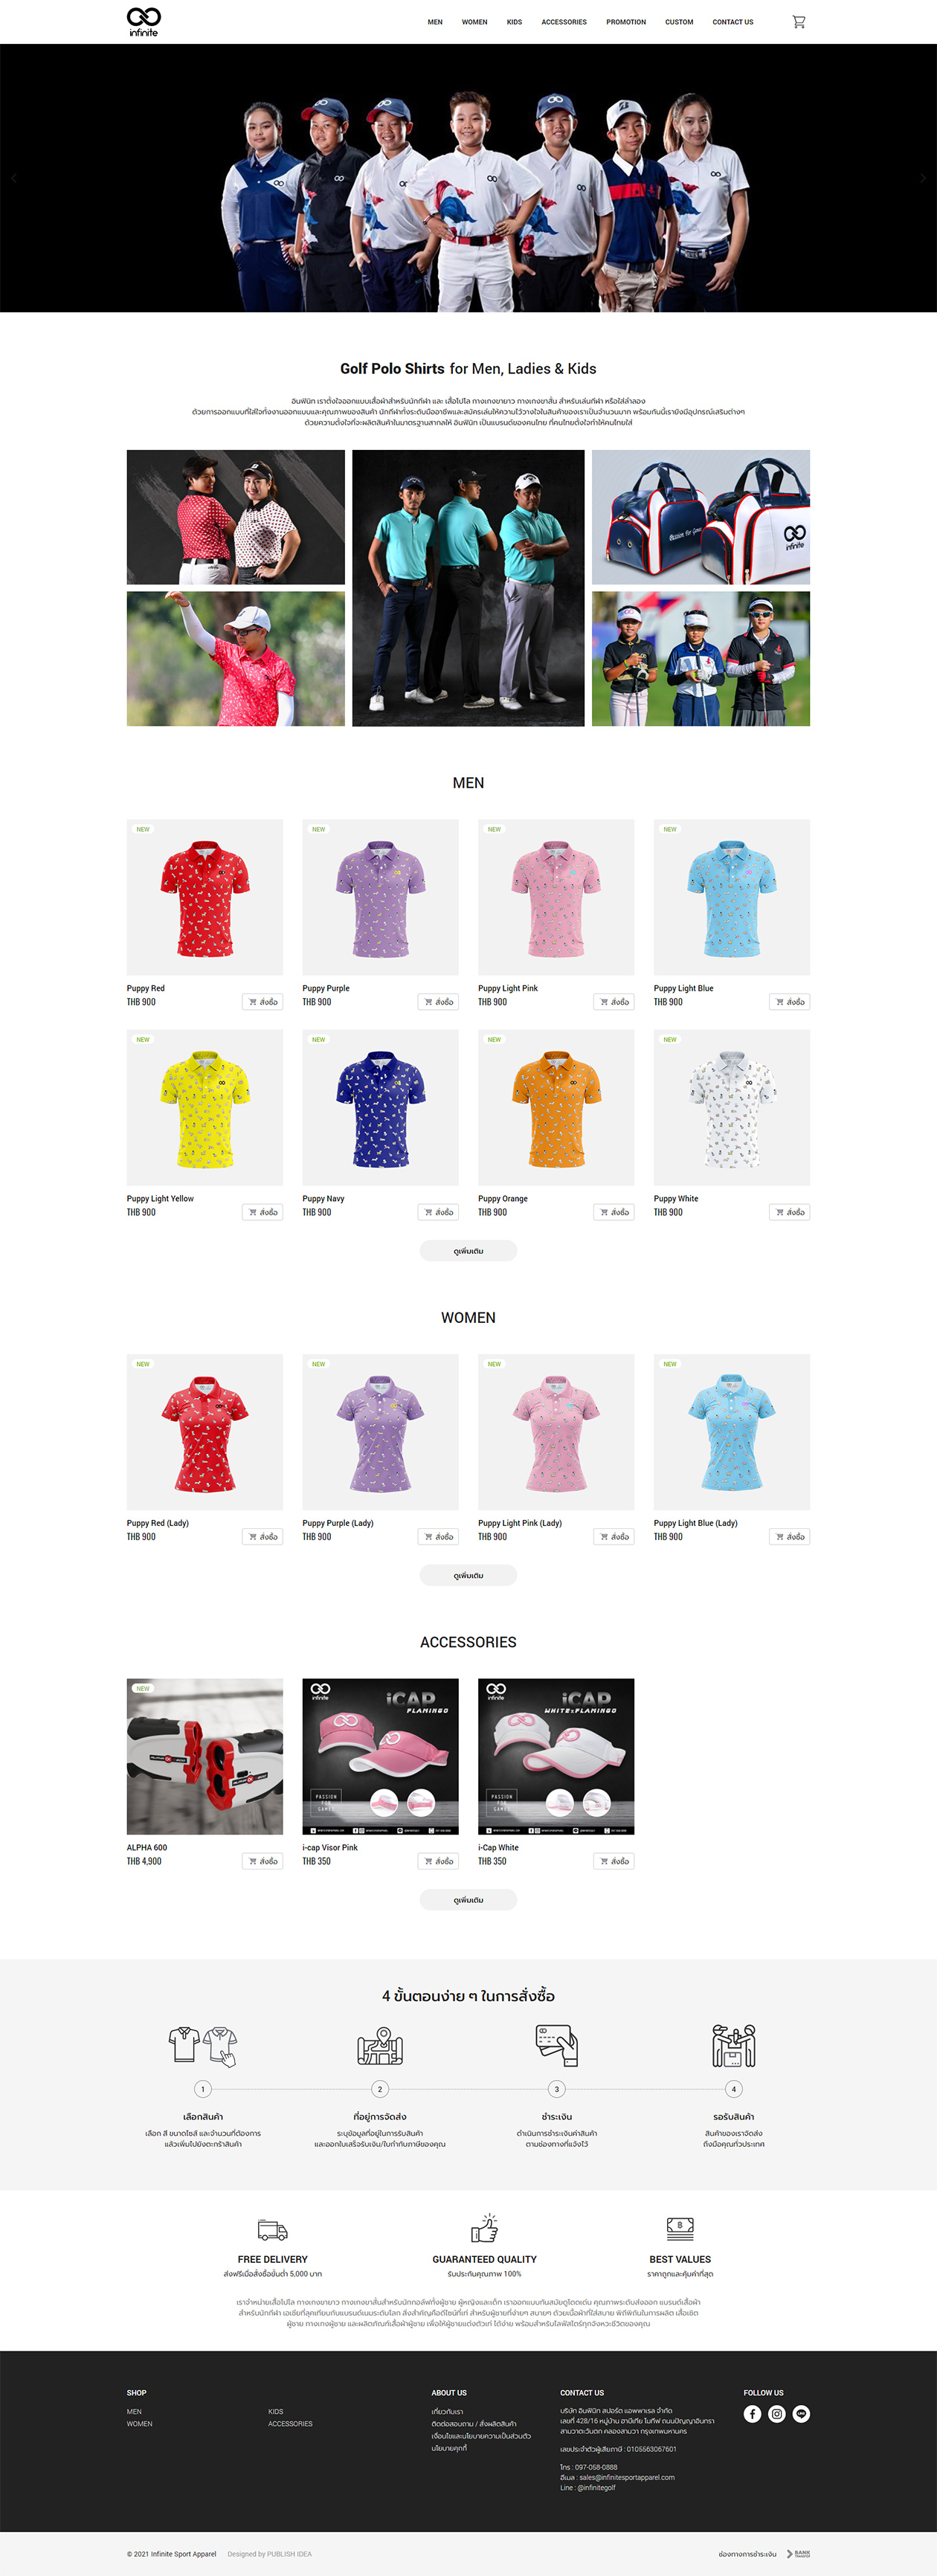 รับออกแบบเว็บไซต์ ขายเสื้อผ้าออนไลน์ เว็บร้านค้าออนไลน์จำหน่ายเสื้อโปโล เว็บขายเสื้อผ้านักกีฬากอล์ฟ ระบบตะกร้าสินค้า